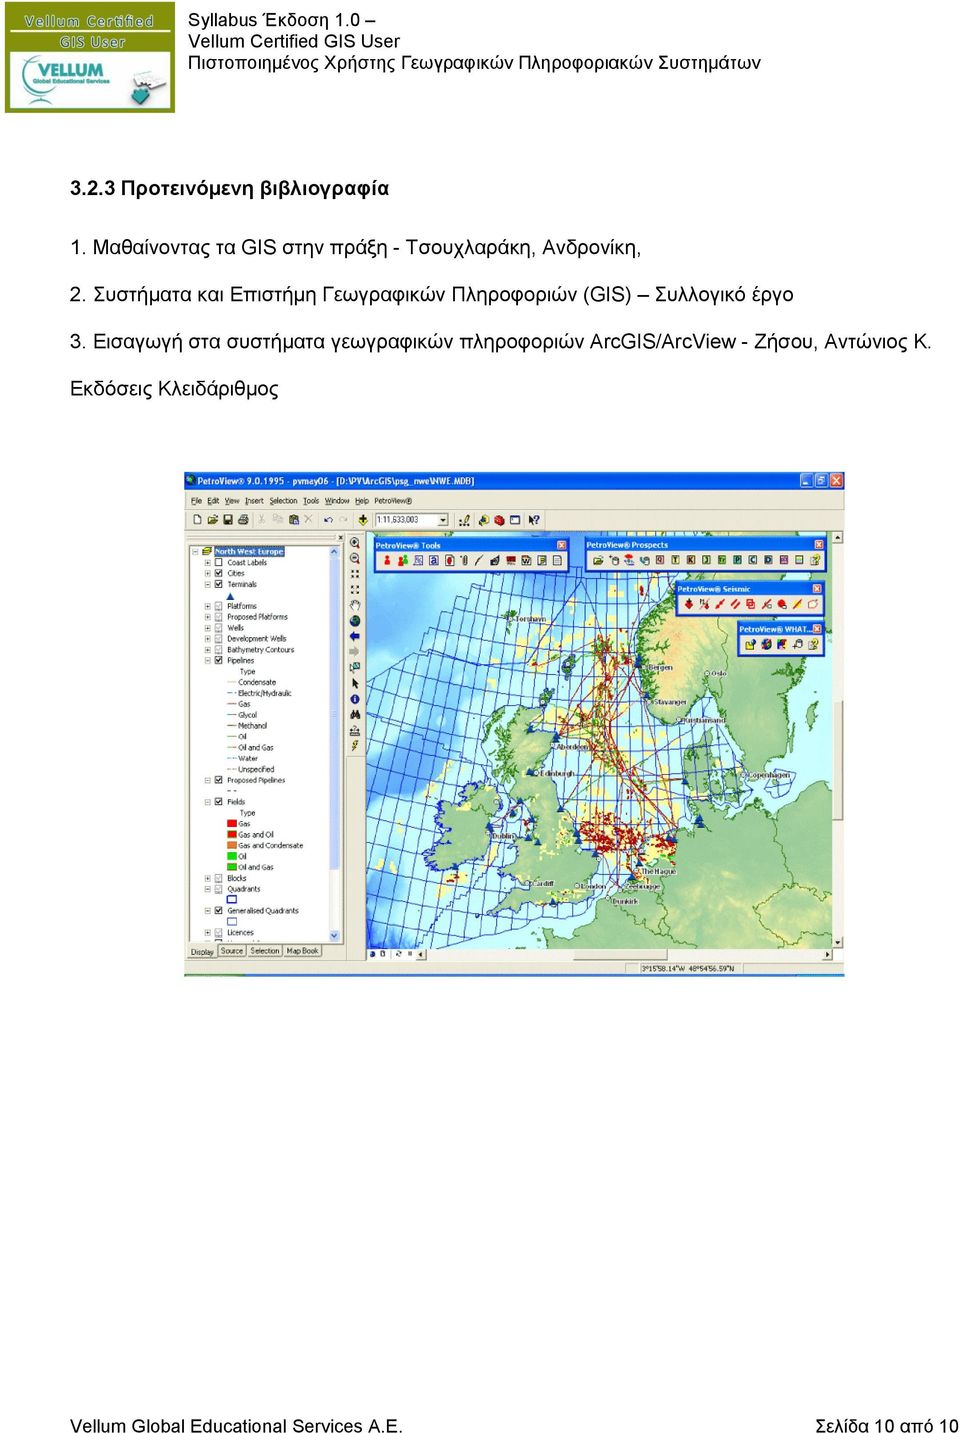 Συστήματα και Επιστήμη Γεωγραφικών Πληροφοριών (GIS) Συλλογικό έργο 3.